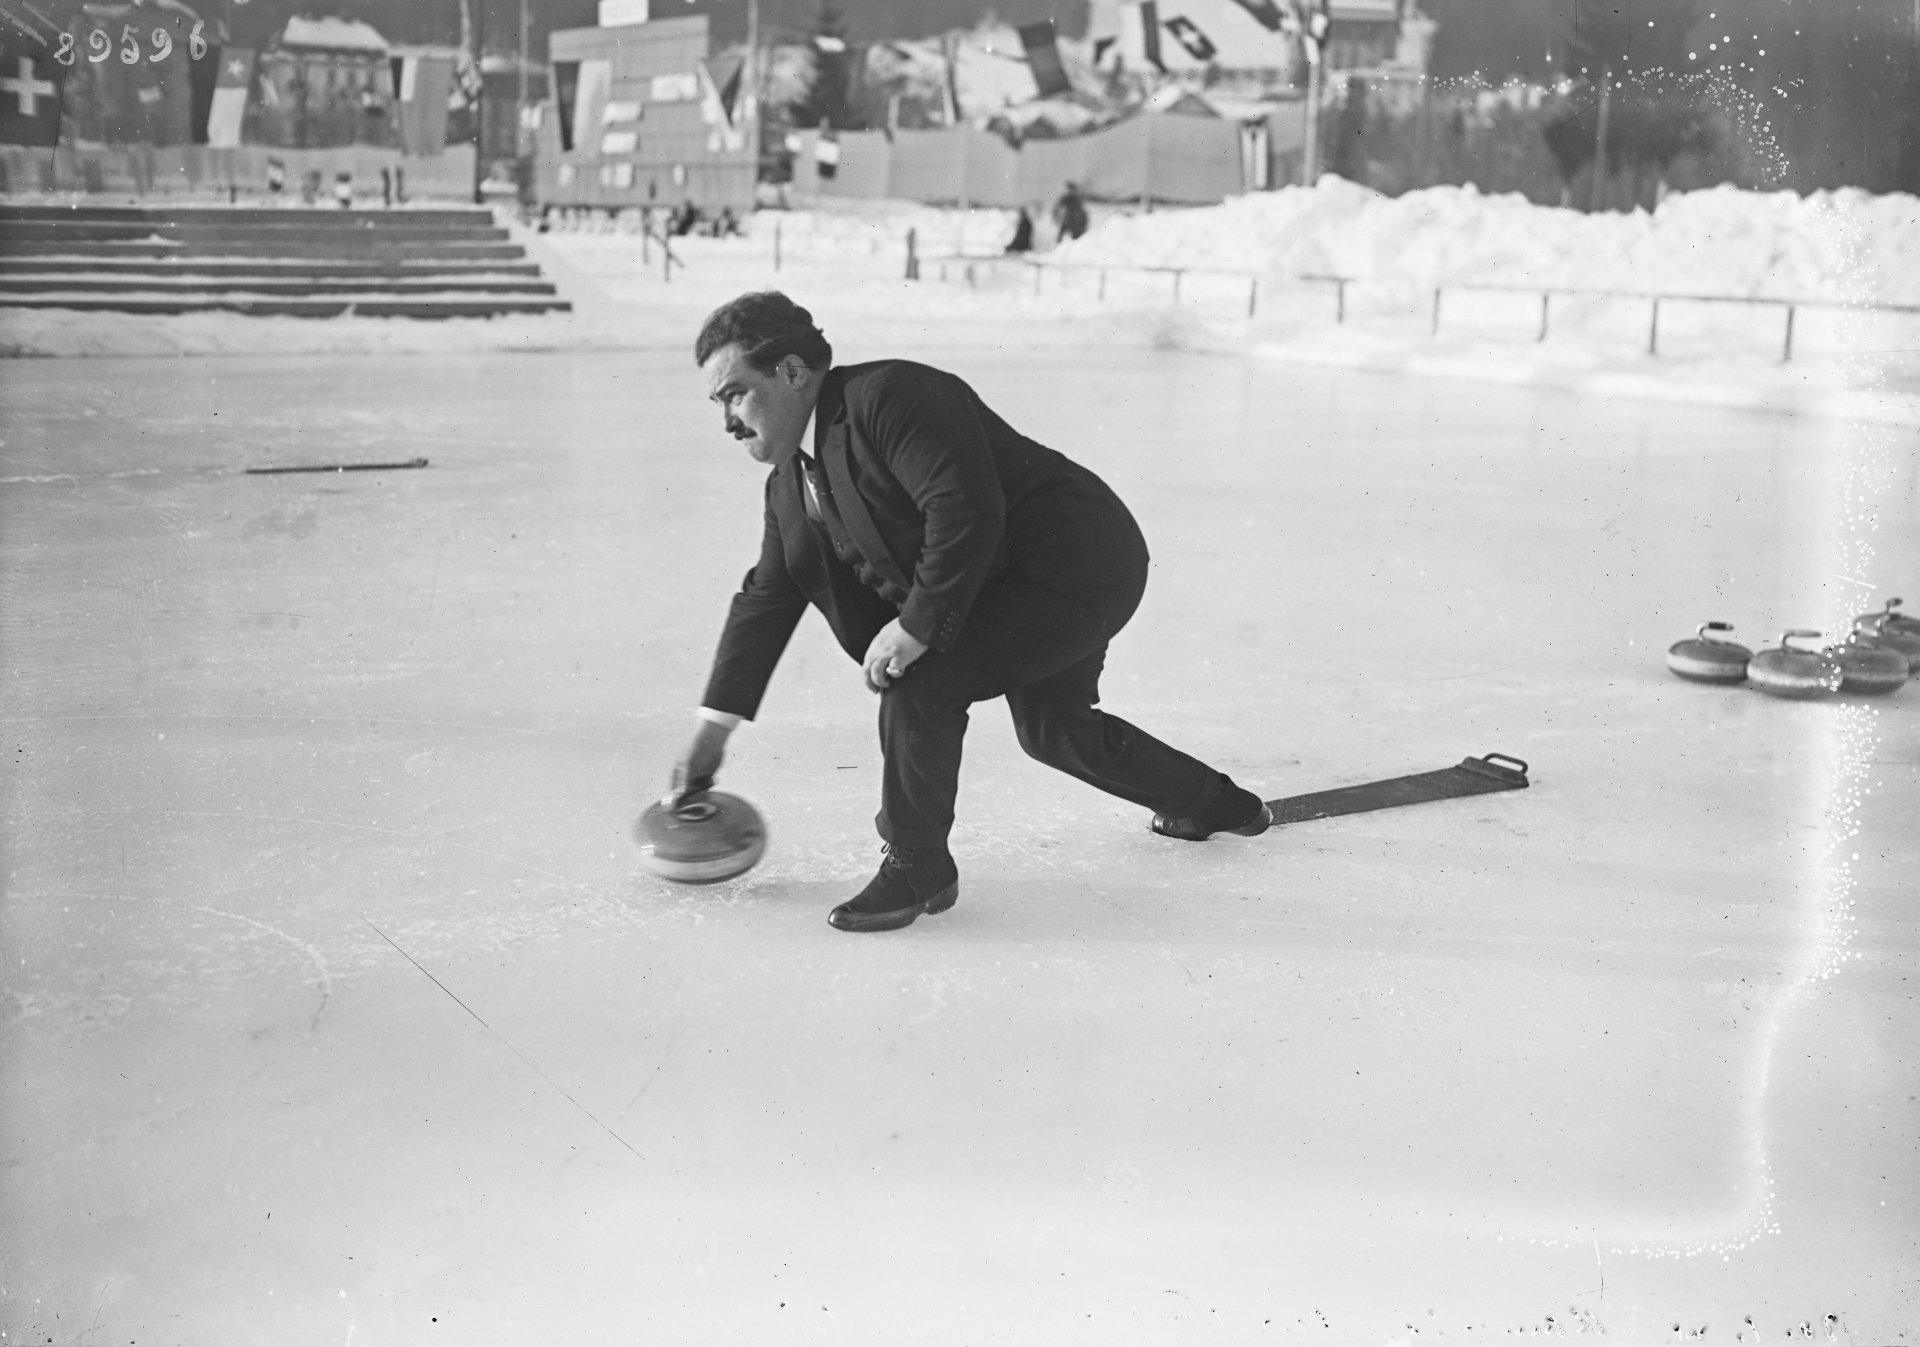 Ein Mann ist zu sehen, der einen Curling-Stein über das Eis schiebt. Er ist im schicken Anzug gekleidet.